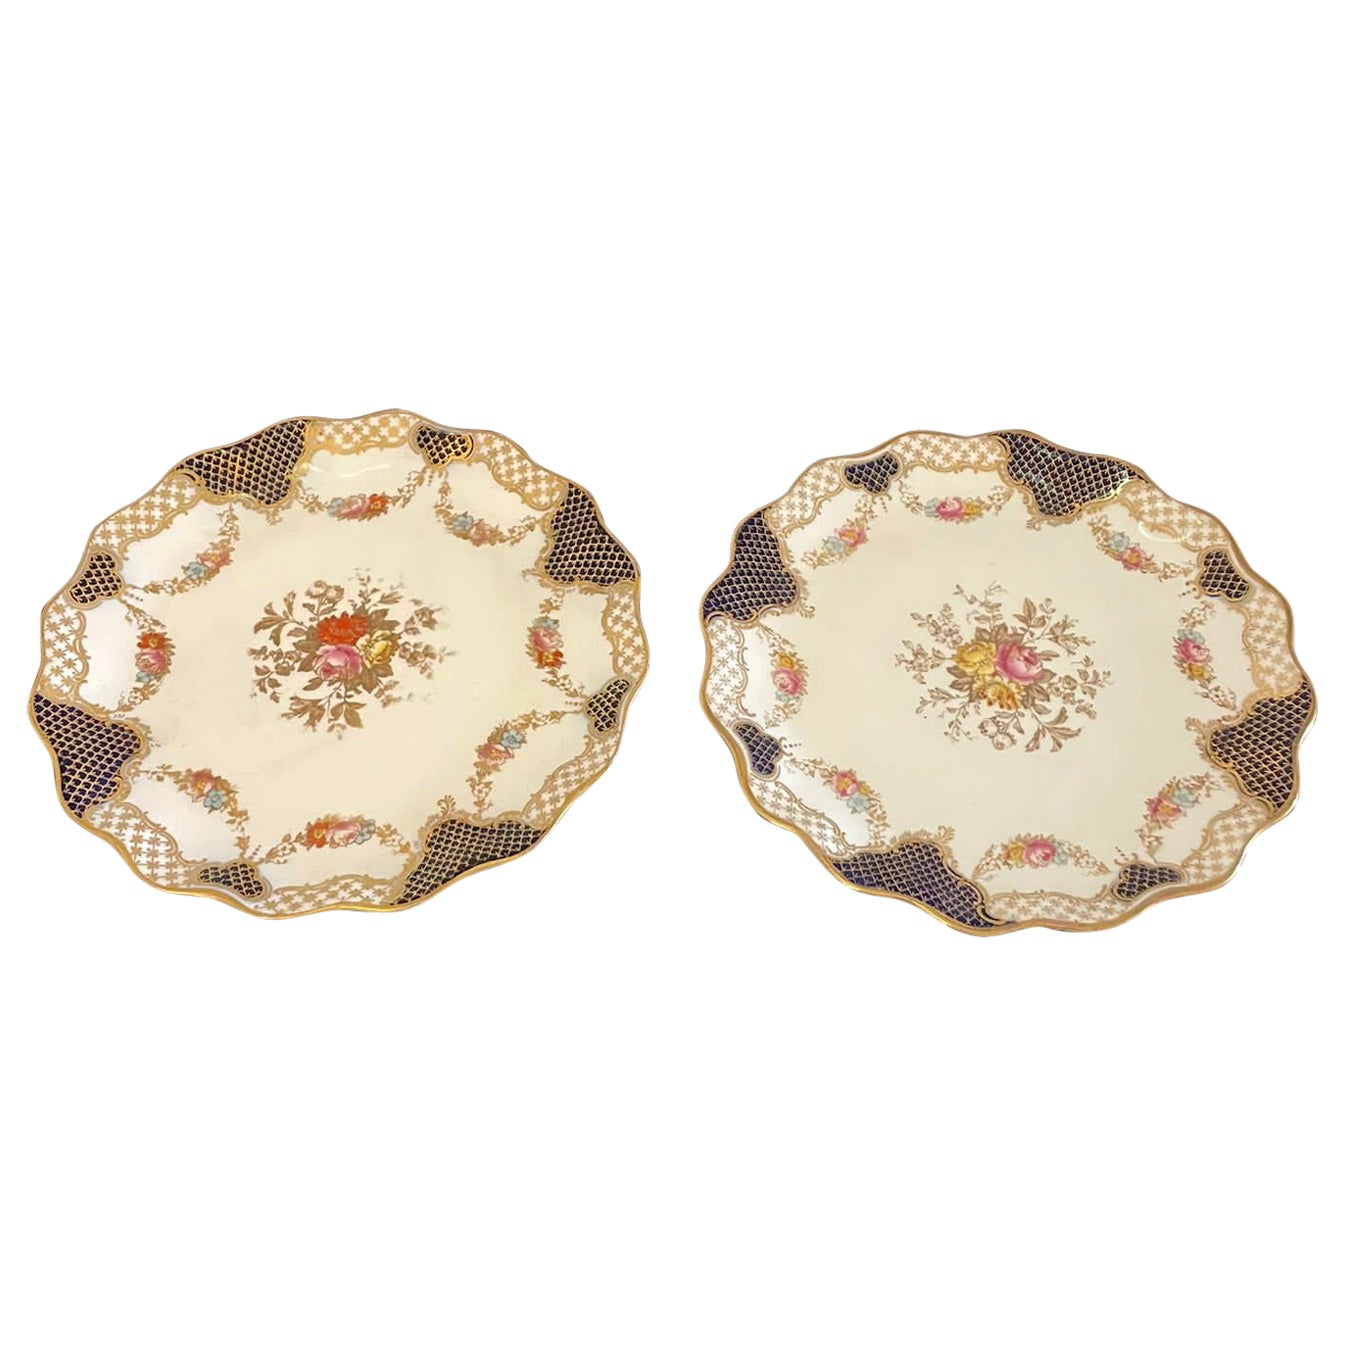 Superbe paire d'assiettes anciennes édouardiennes peintes à la main en forme de Wedgwood 